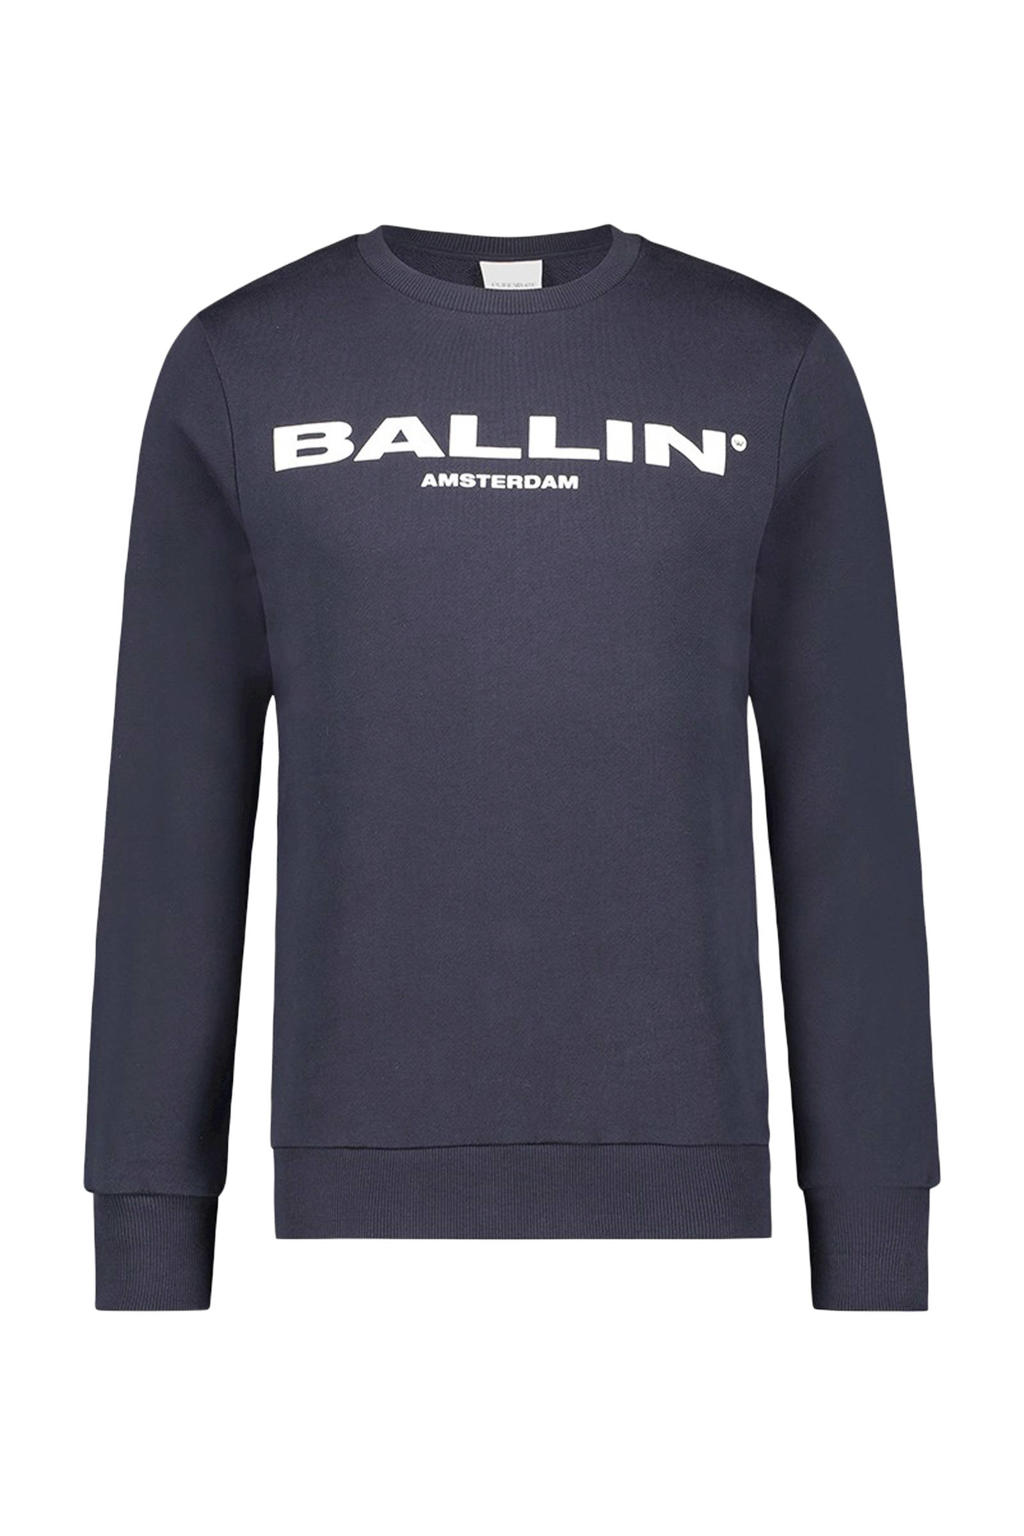 Ballin sweater met tekst donkerblauw